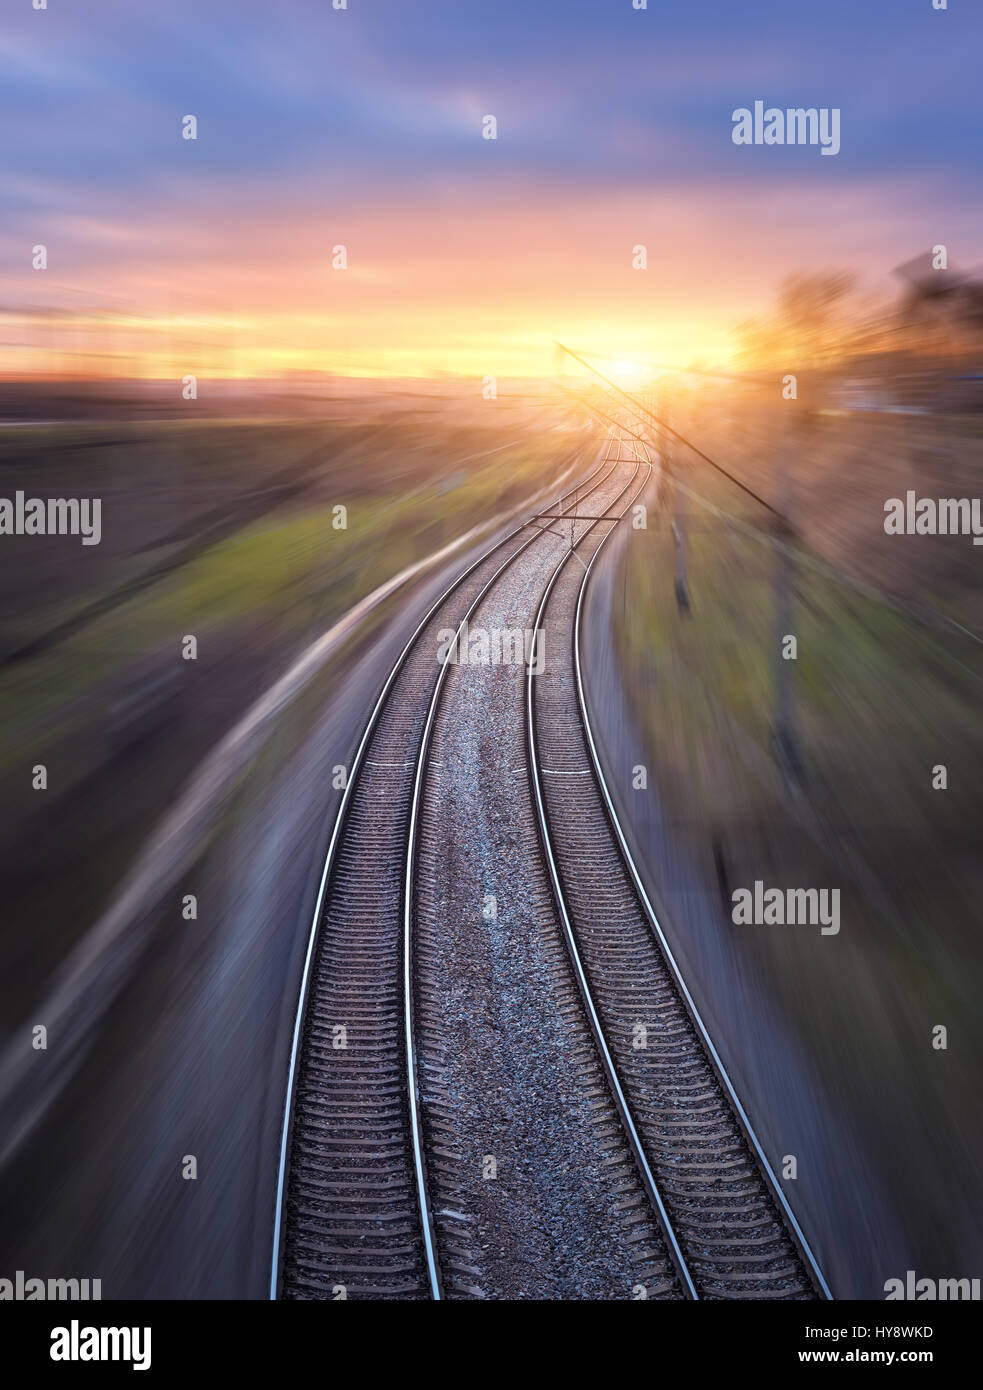 Eisenbahn in Bewegung bei Sonnenuntergang. Bahnhof mit Motion blur Effekt und sonnigen Himmel mit Wolken. Industrielle Konzept Hintergrund. Blick von oben. Rai Stockfoto